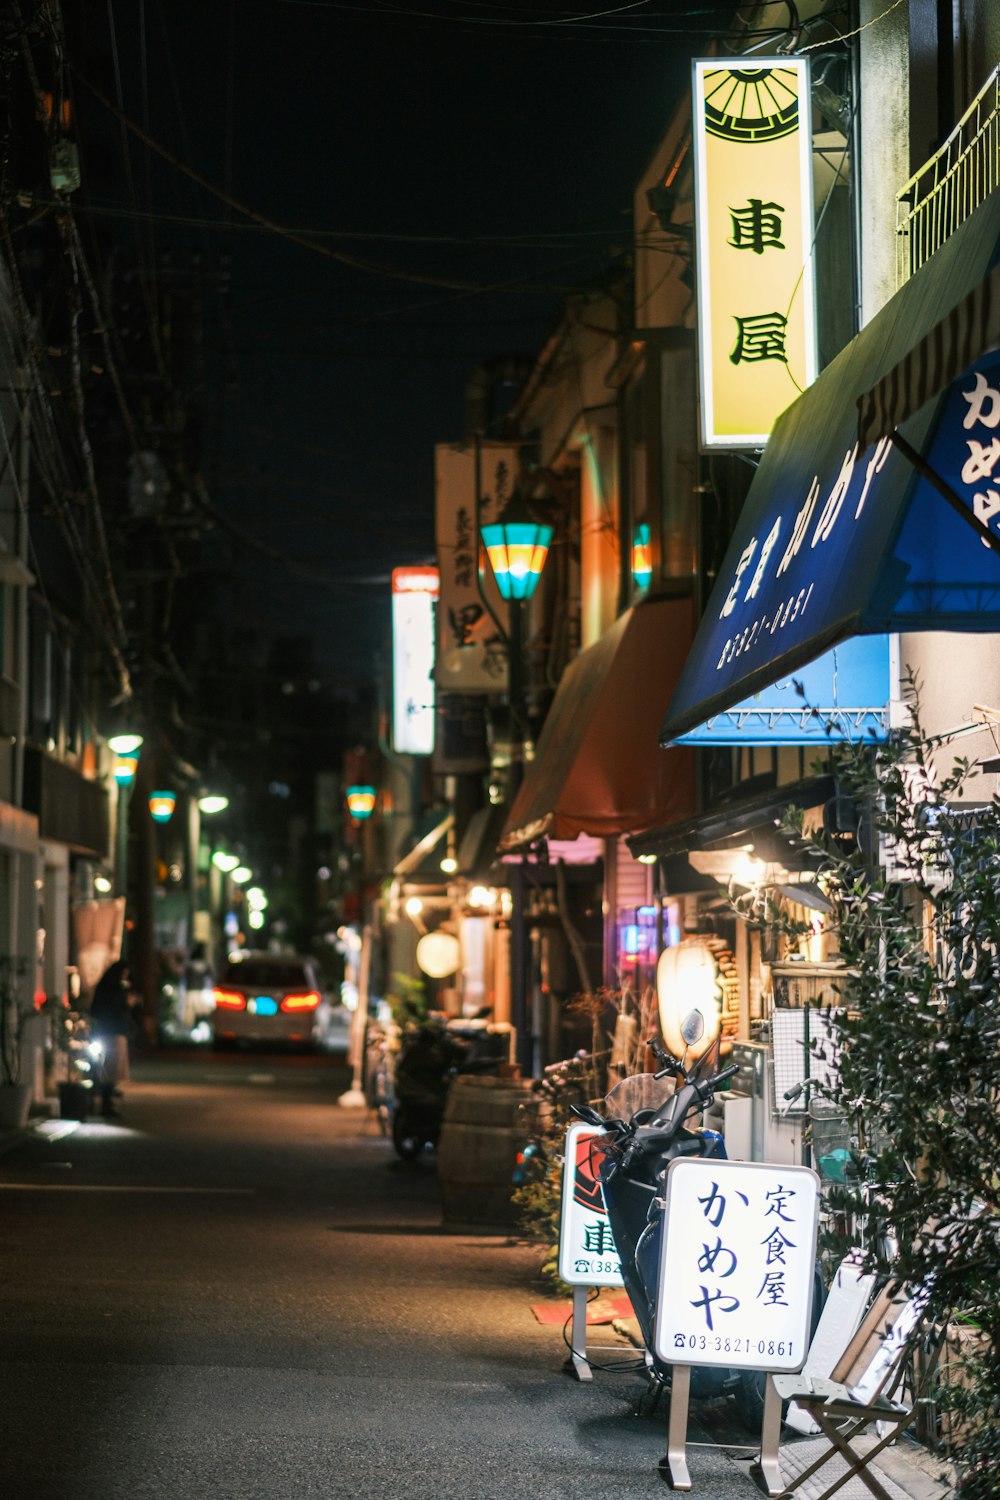 Una calle de la ciudad por la noche con letreros y luces